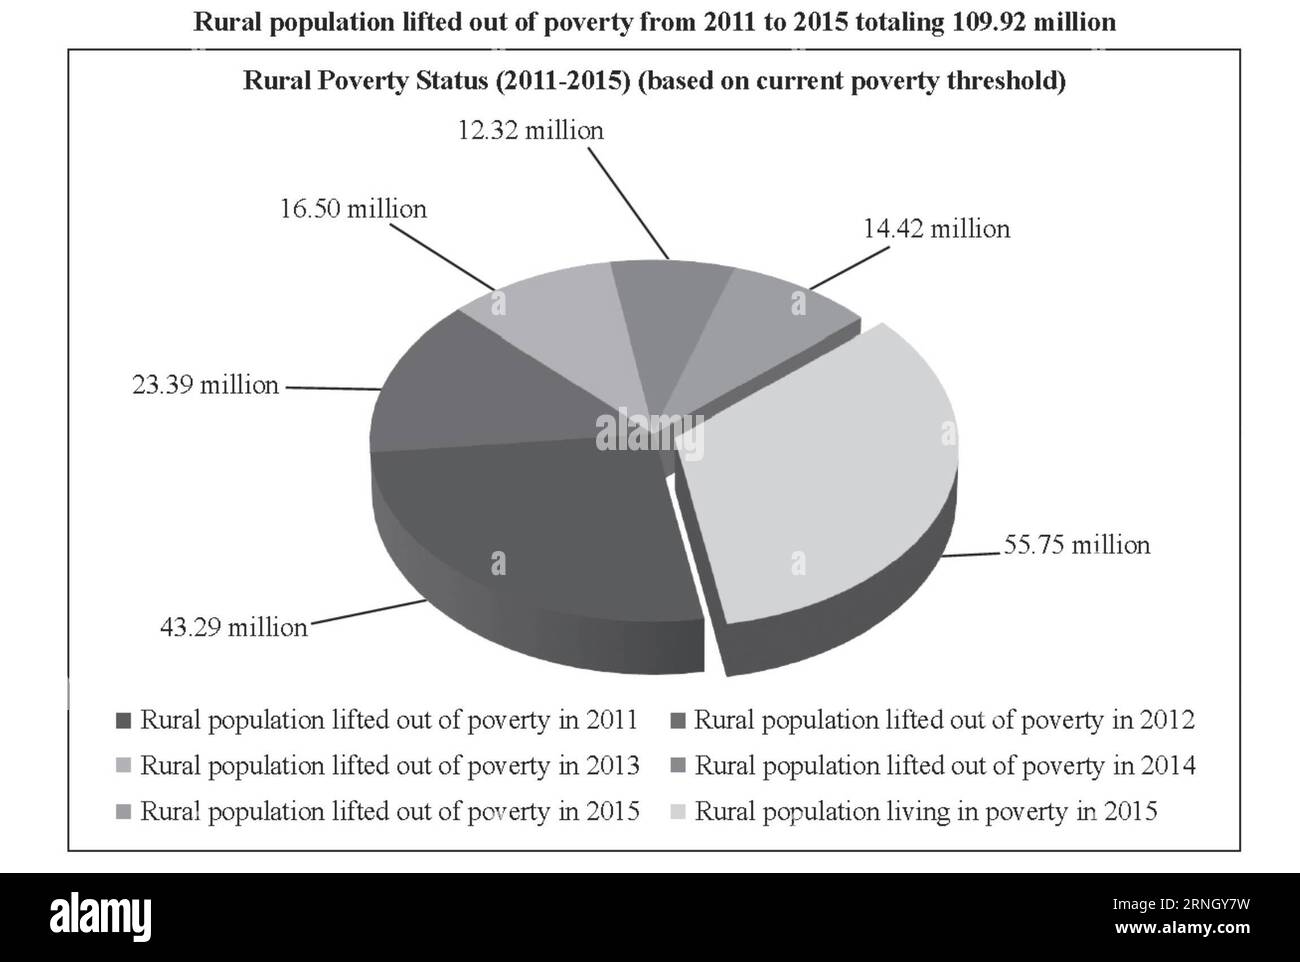 (161017) -- PEKING, 17. Oktober 2016 -- Grafik zeigt, dass die ländliche Bevölkerung aus der Armut von 2011 bis 2015 in Höhe von 109,92 Millionen, 17. Oktober 2016. ) GRAFIK ländliche Bevölkerung aus der Armut von 2011 bis 2015 insgesamt 109,92 Millionen (CN) ZhouxDaqing PUBLICATIONxNOTxINxCHN Peking OKT 17 2016 Grafik zeigt Thatcher ländliche Bevölkerung aus der Armut von 2011 bis 2015 insgesamt 109 92 Millionen OKT 17 2016 Grafik ländliche Bevölkerung aus der Armut von 2011 bis 2015 insgesamt 109 92 Millionen KN-Packungen Stockfoto